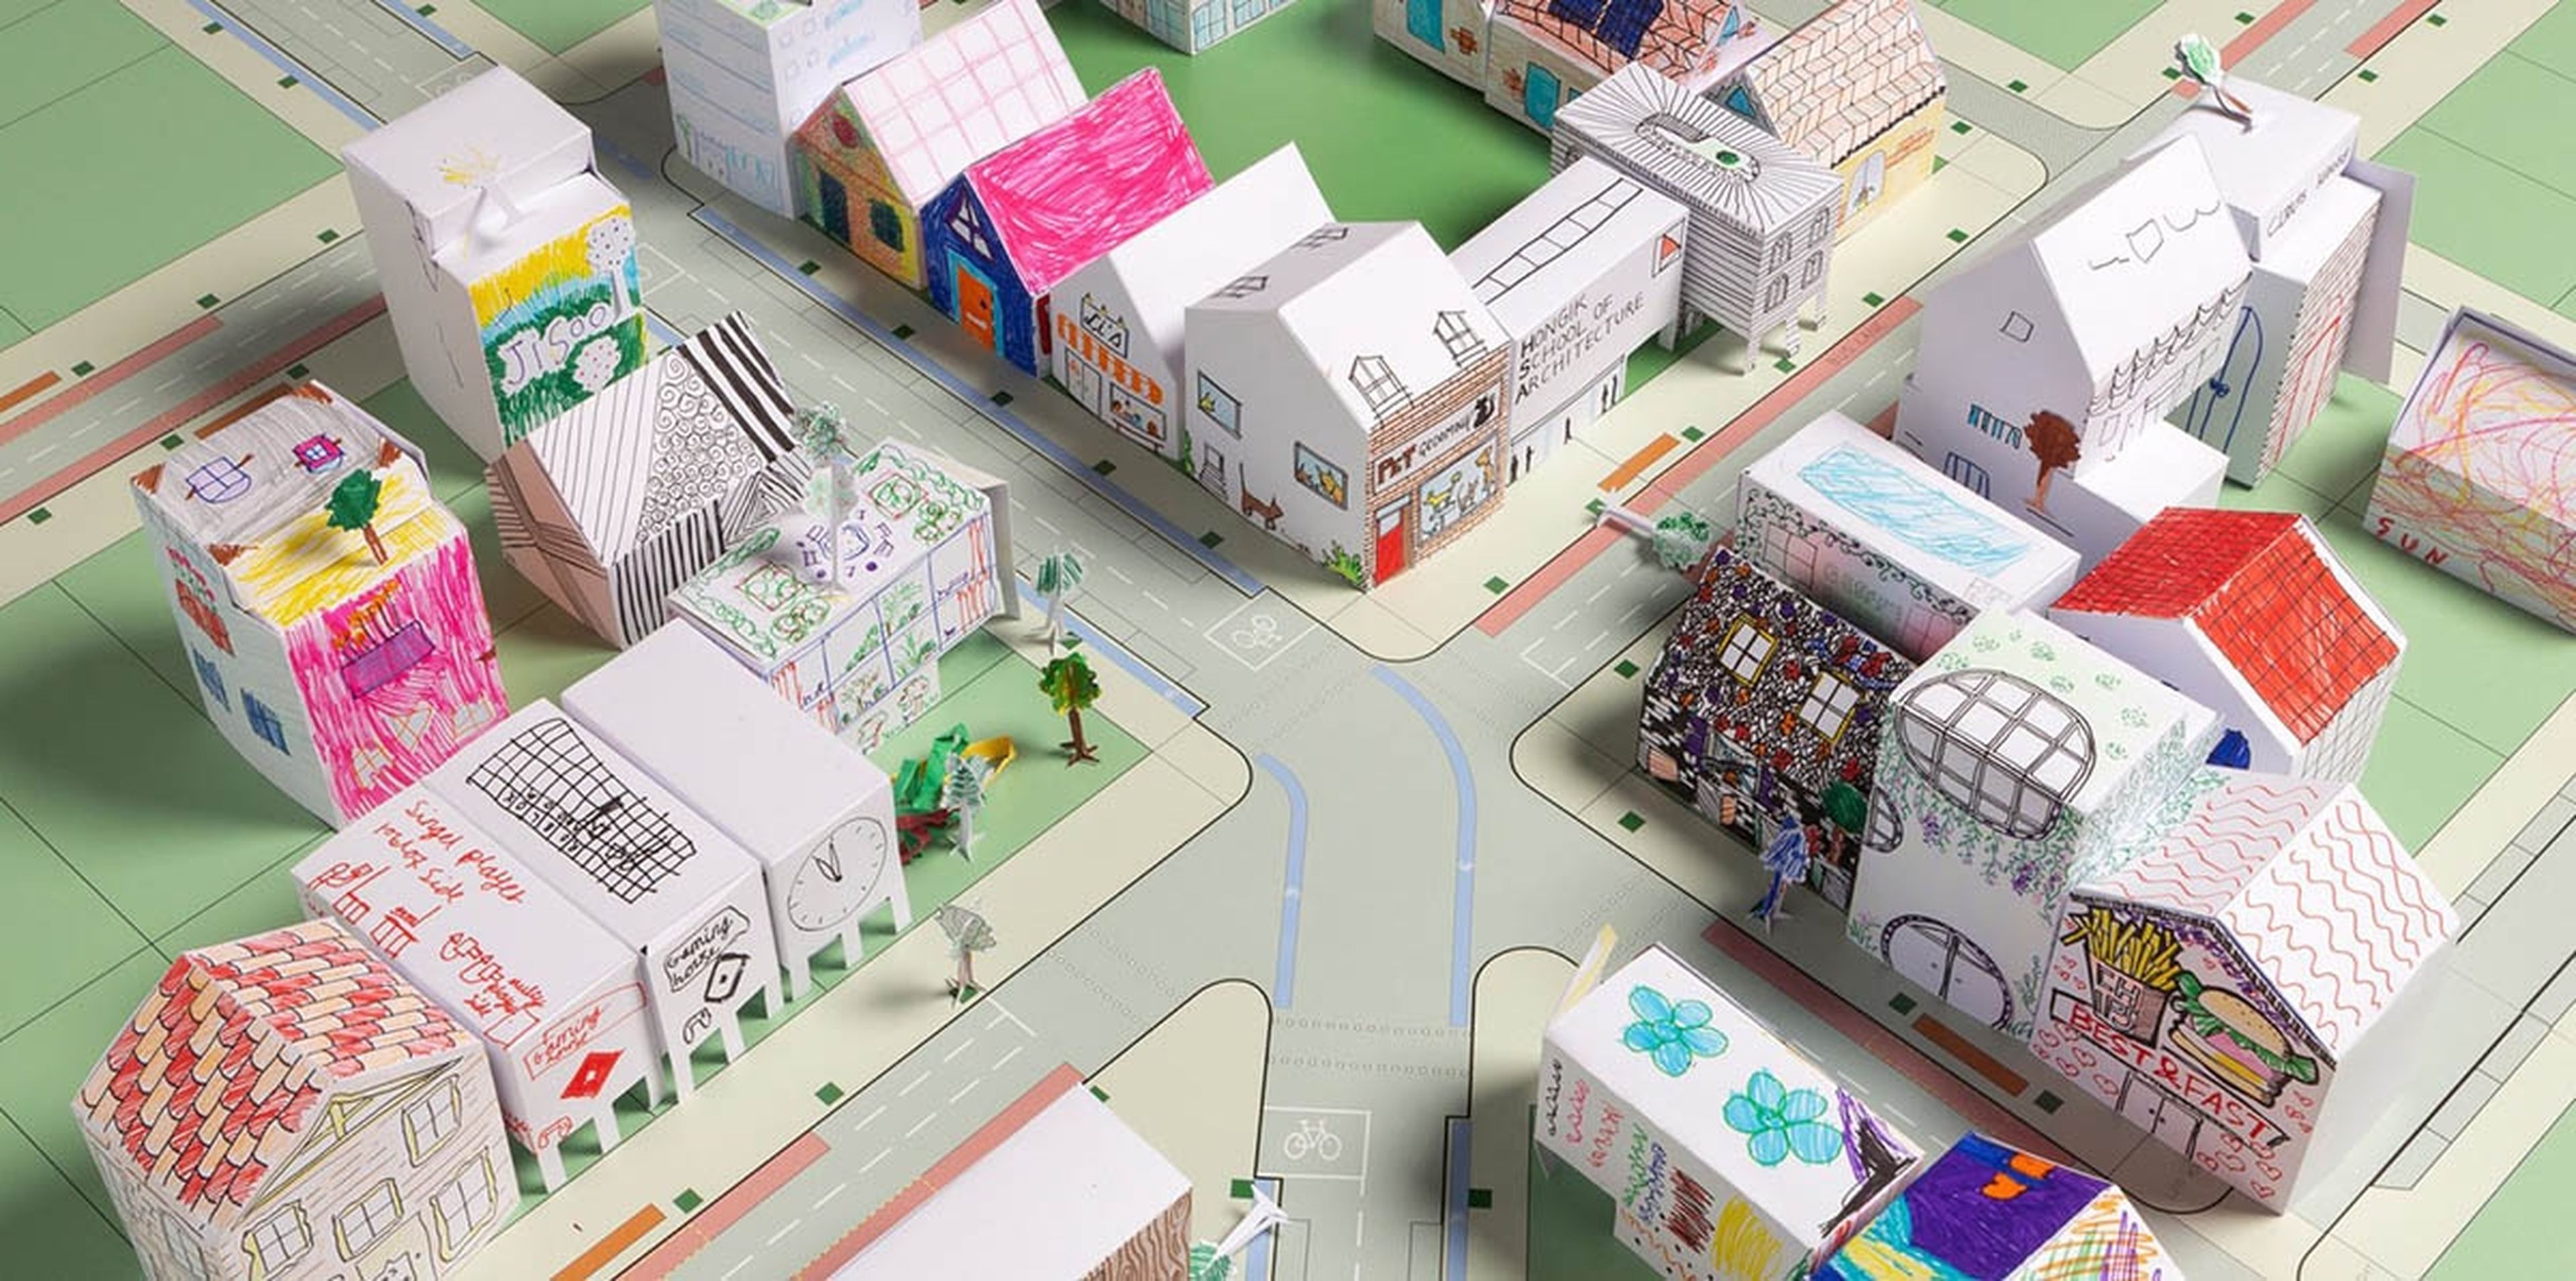 Una firma de arquitectos ofrece recortables para que los niños construyan  su propia ciudad de papel | Computer Hoy